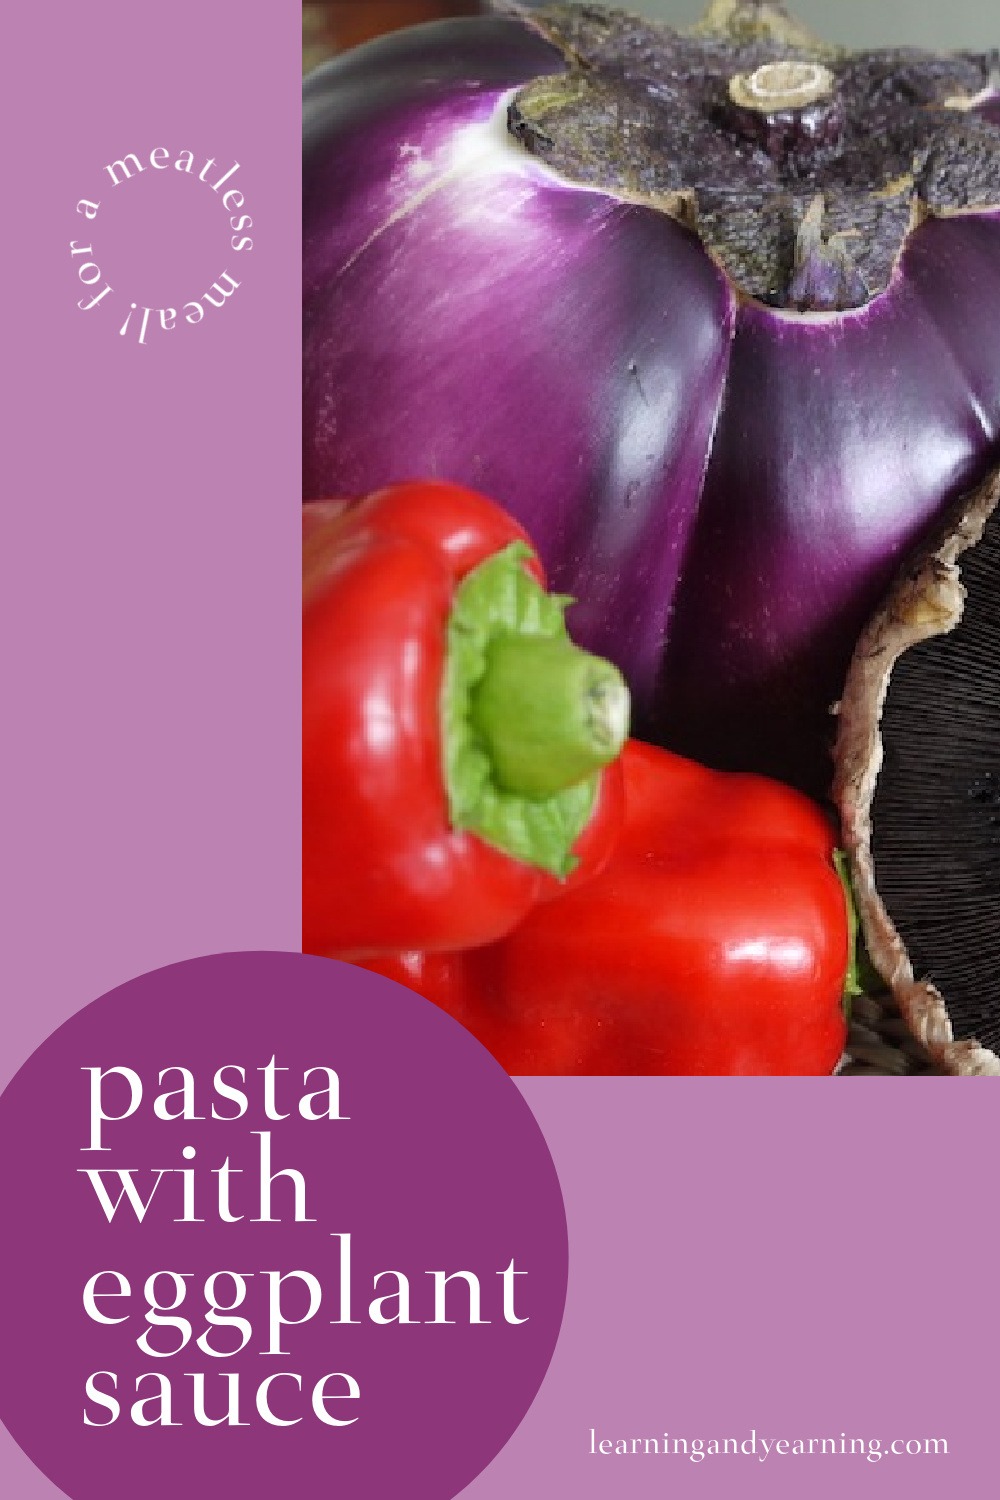 Pasta with eggplant sauce!